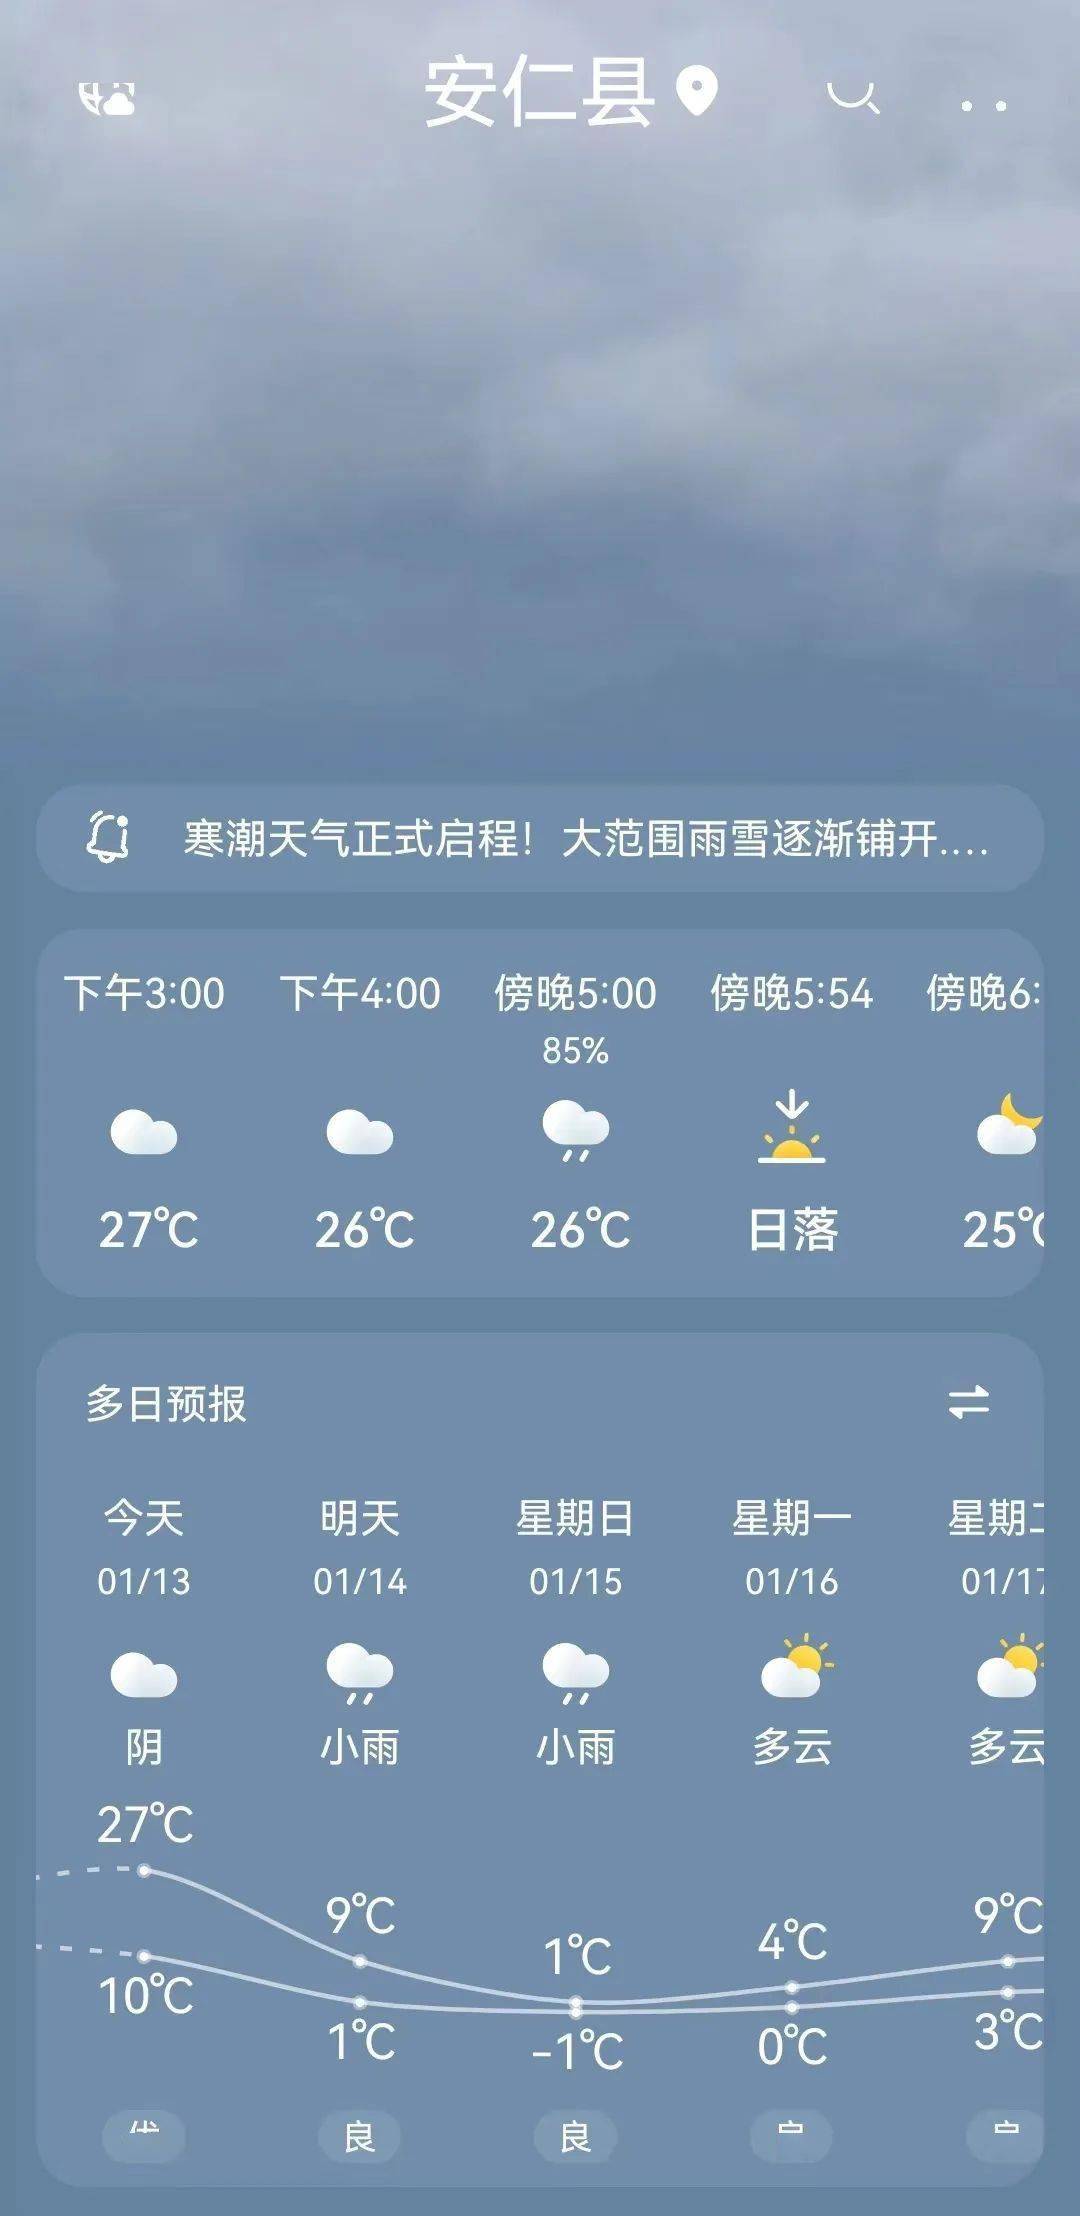 发布最新天气预报刚刚,安仁县气象局千万不要被眼前的温暖所迷惑but!